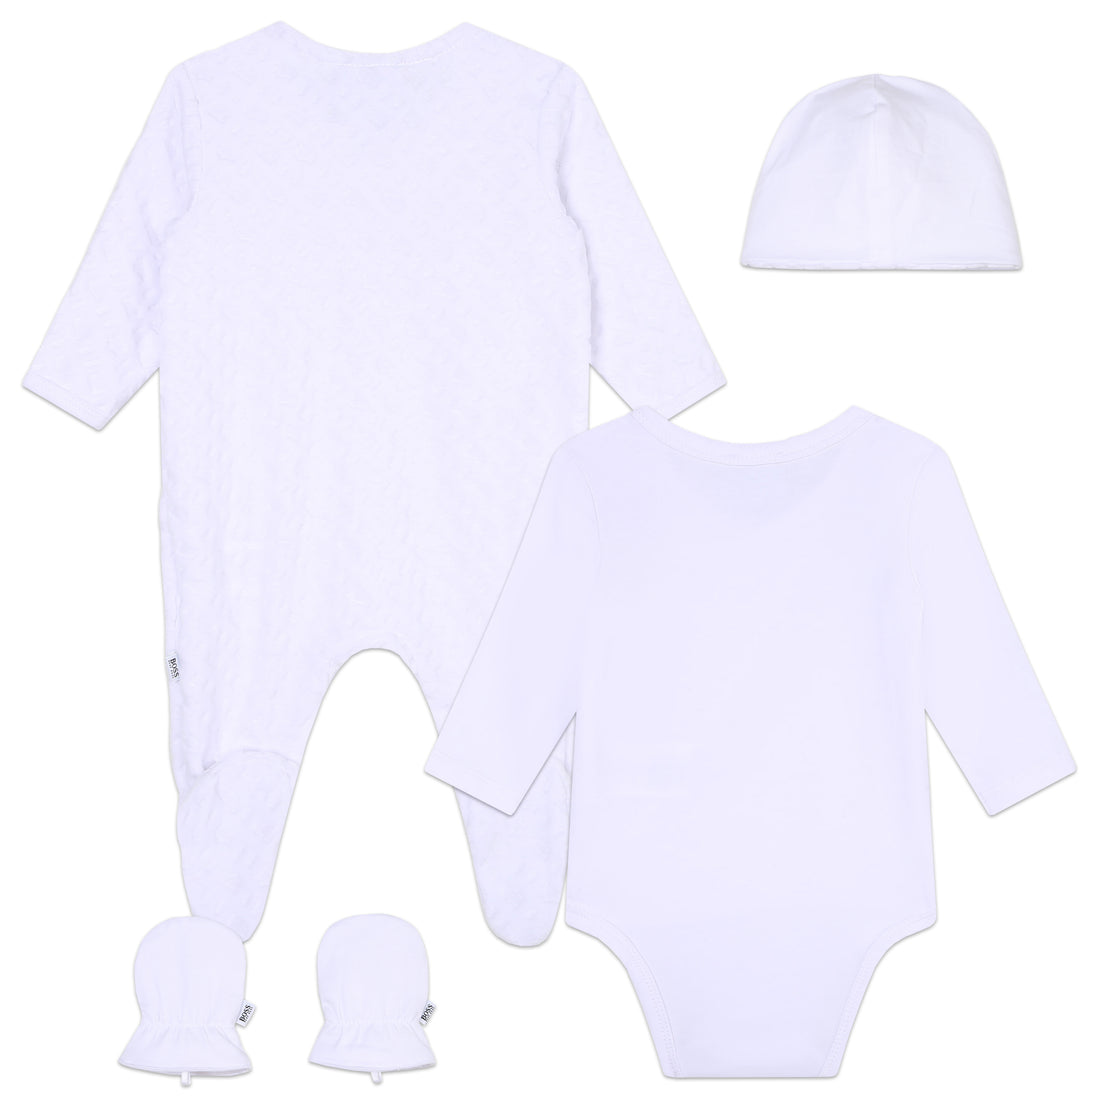 Hugo Boss Pyjamas + Pull On Hat Set Style: J98440